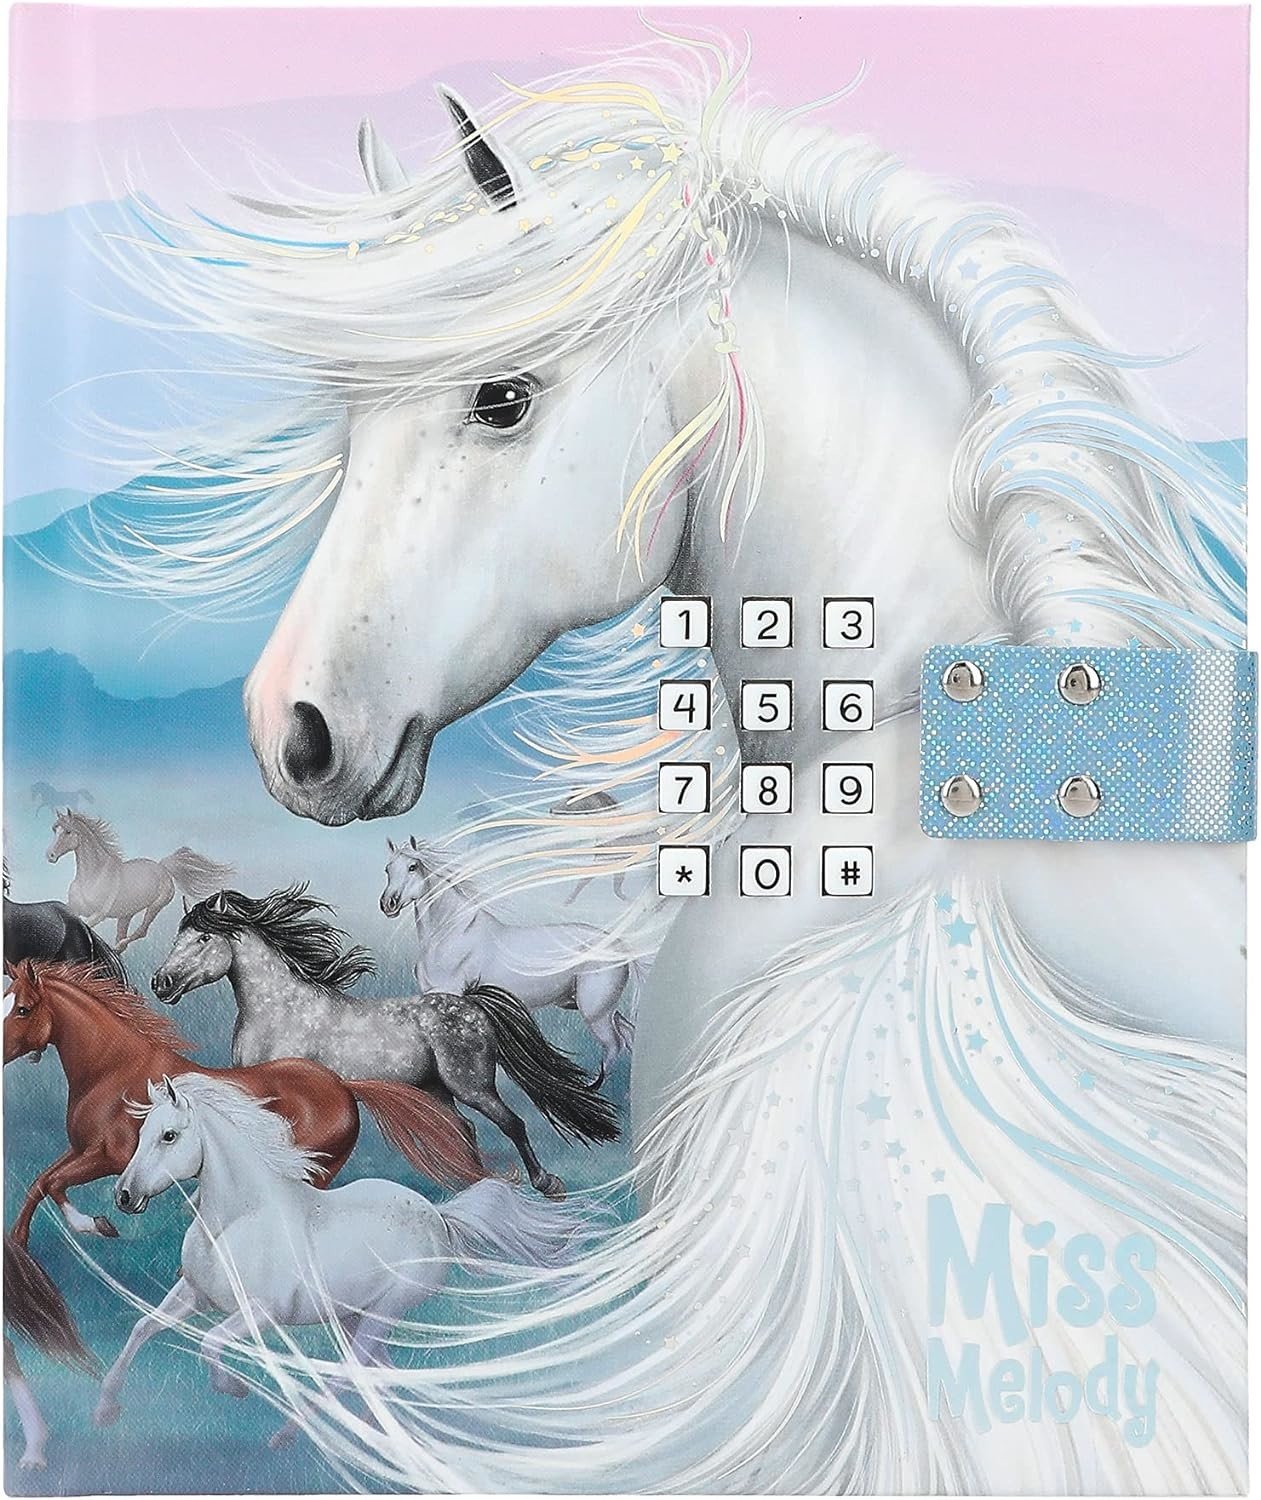 Miss Melody, 3498599, zápisník s číselným kódováním, stádo koní